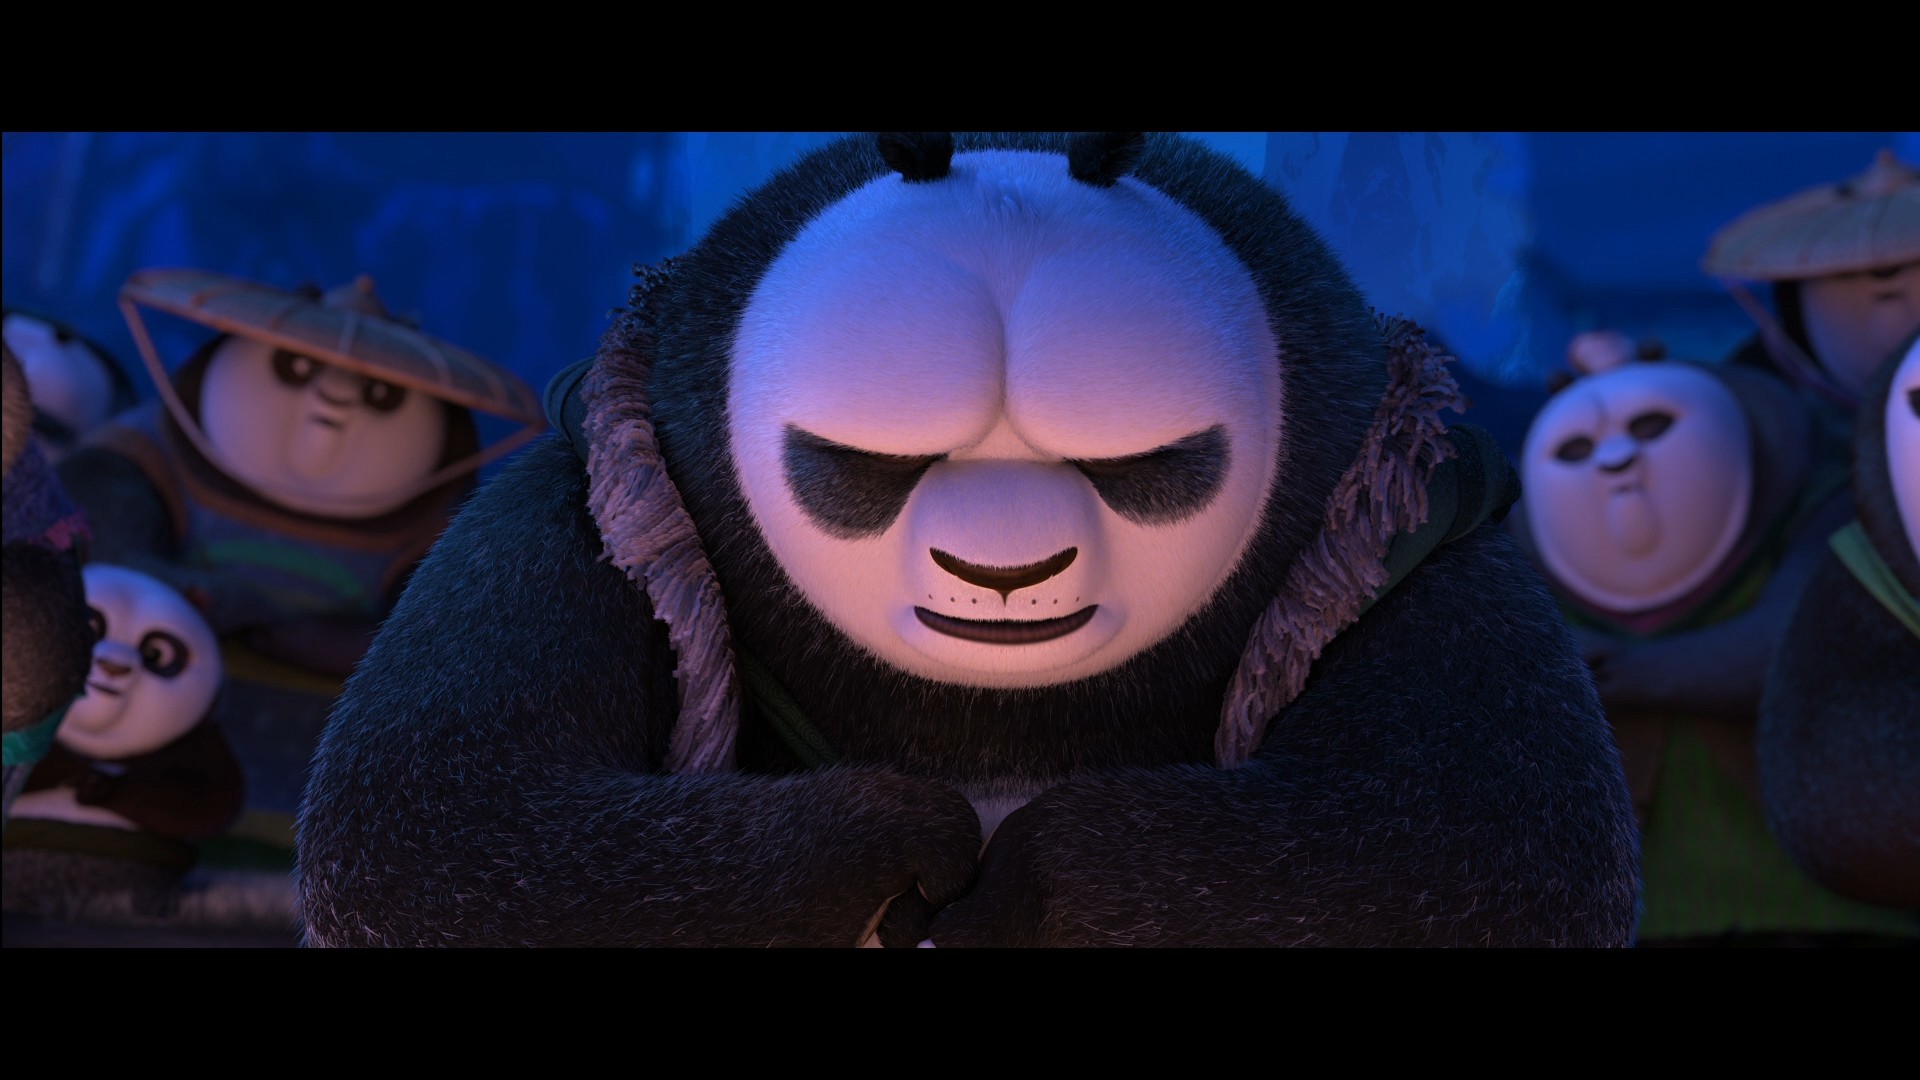 [功夫熊猫3].Kung.Fu.Panda.3.2016.HK.3D.BluRay.1080p.AVC.DTS-HD.MA.7.1-TTG   37.03G-12.jpg